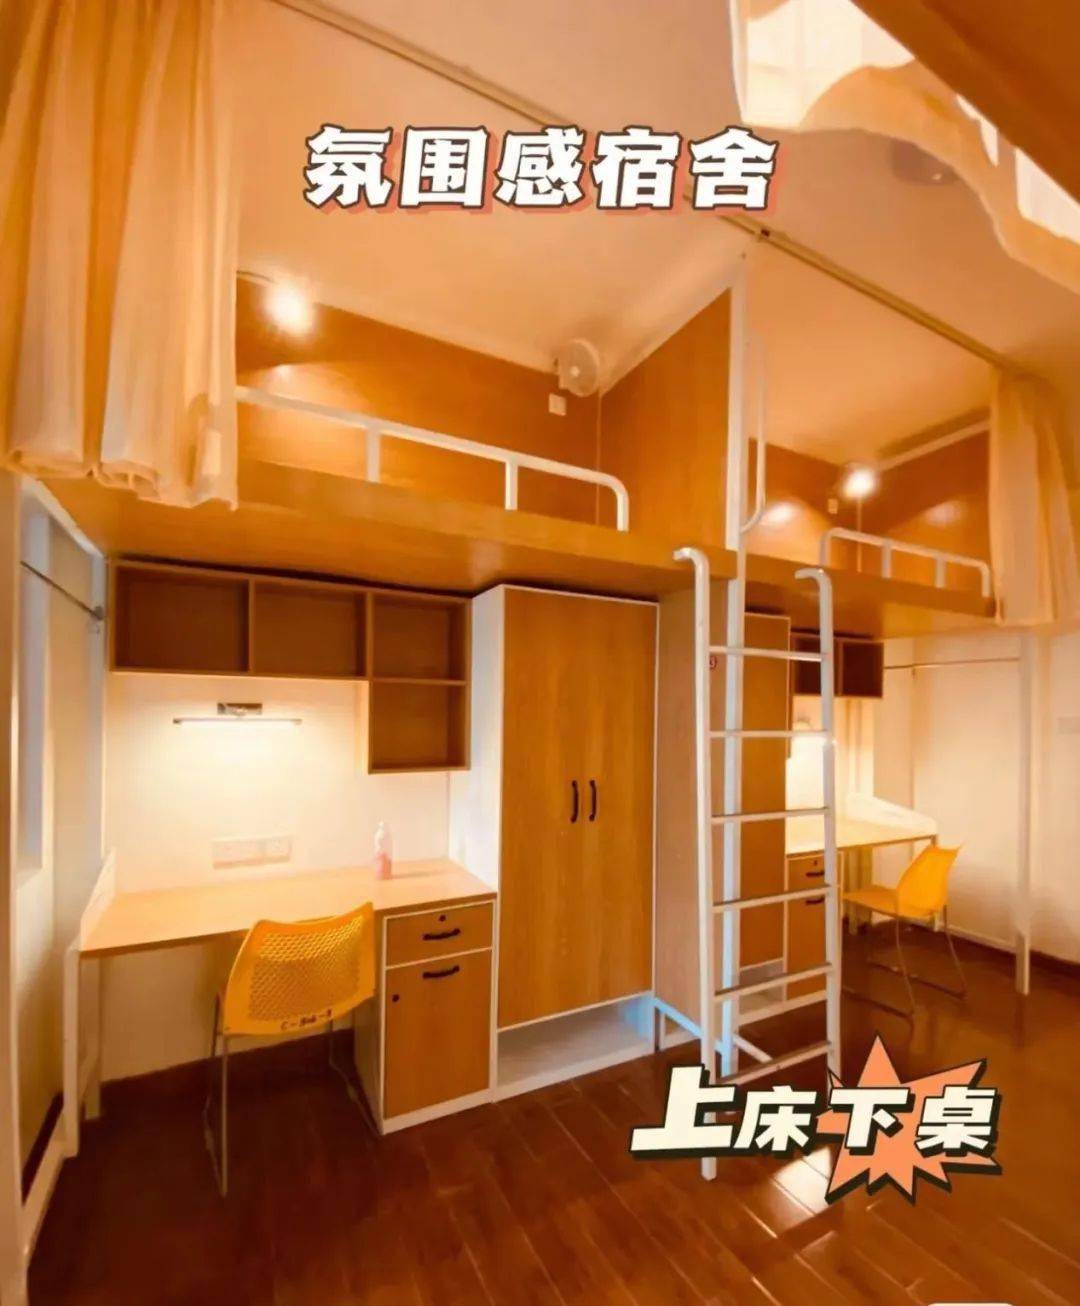 广州工商学院宿舍图片